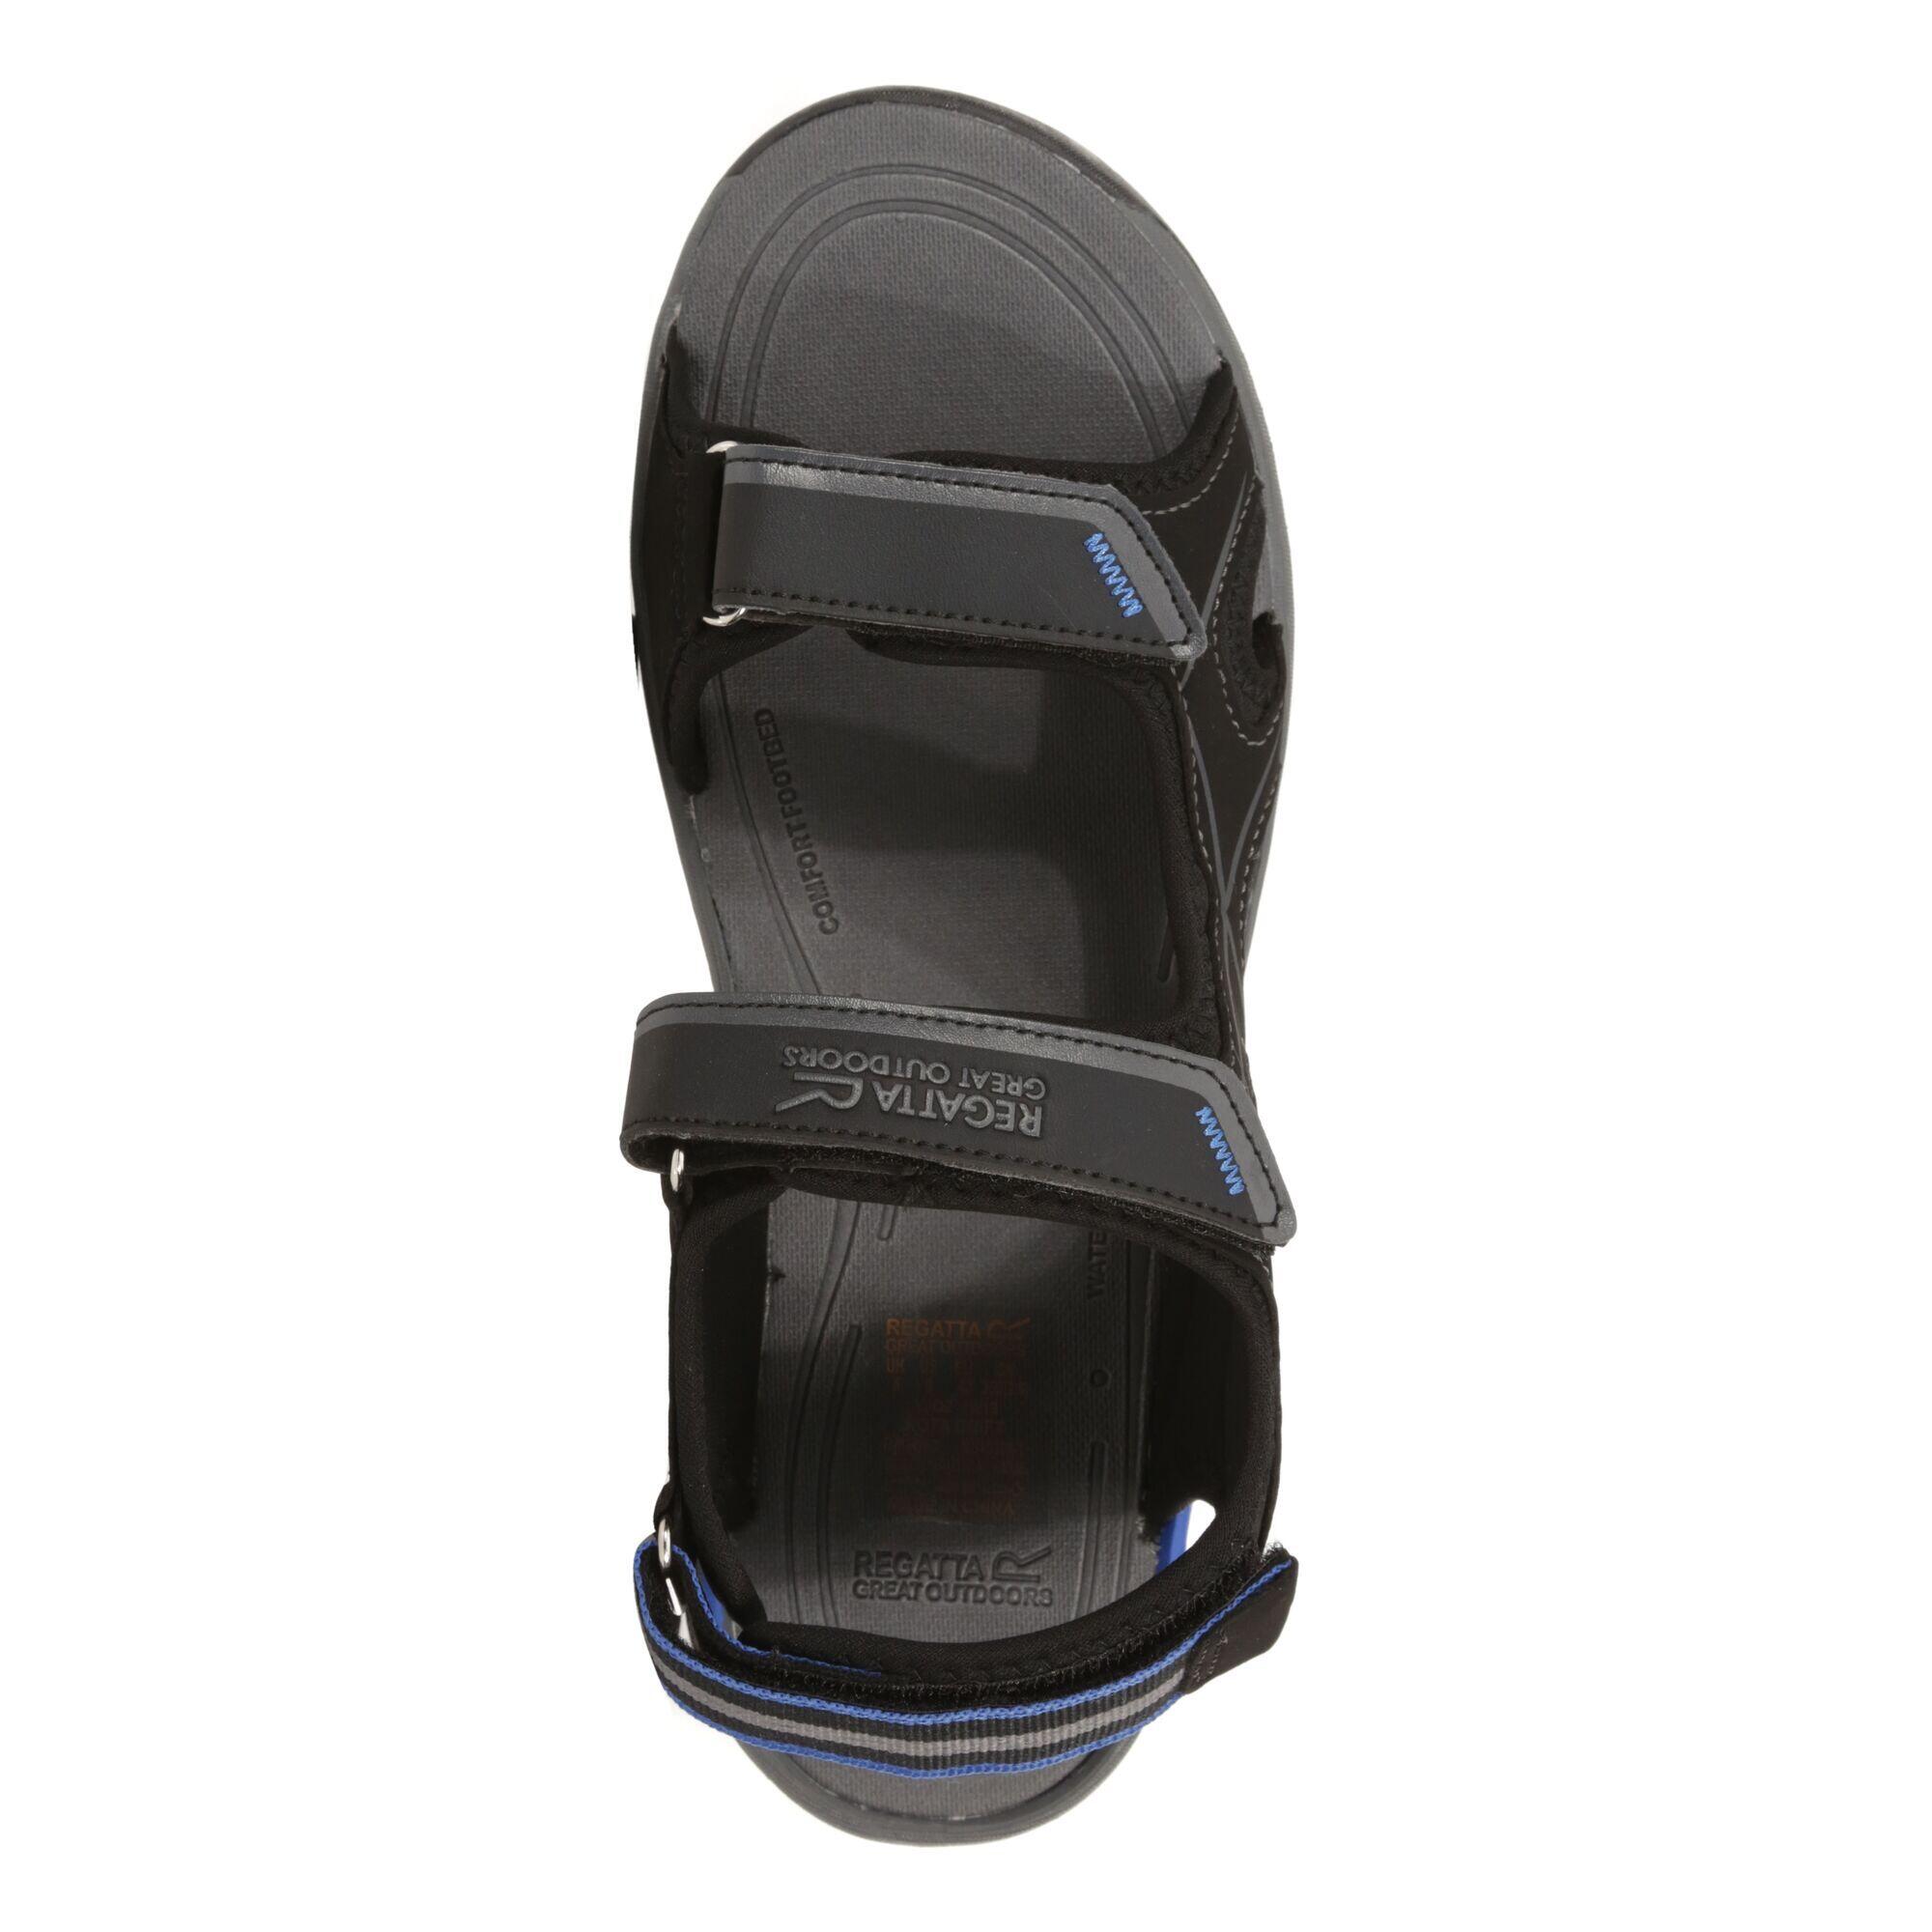 Kota Drift Men's Walking Sandals - Black / Blue 6/6